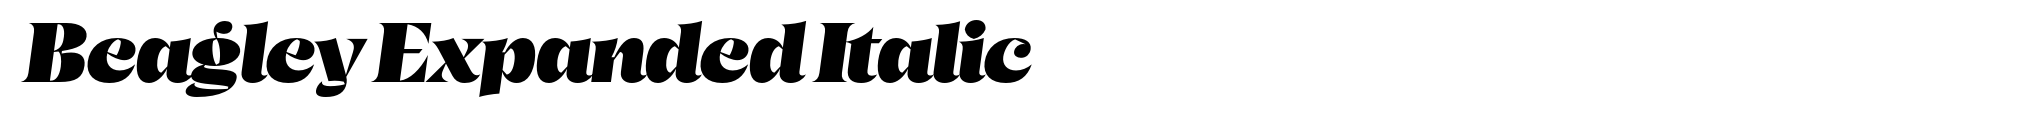 Beagley Expanded Italic image